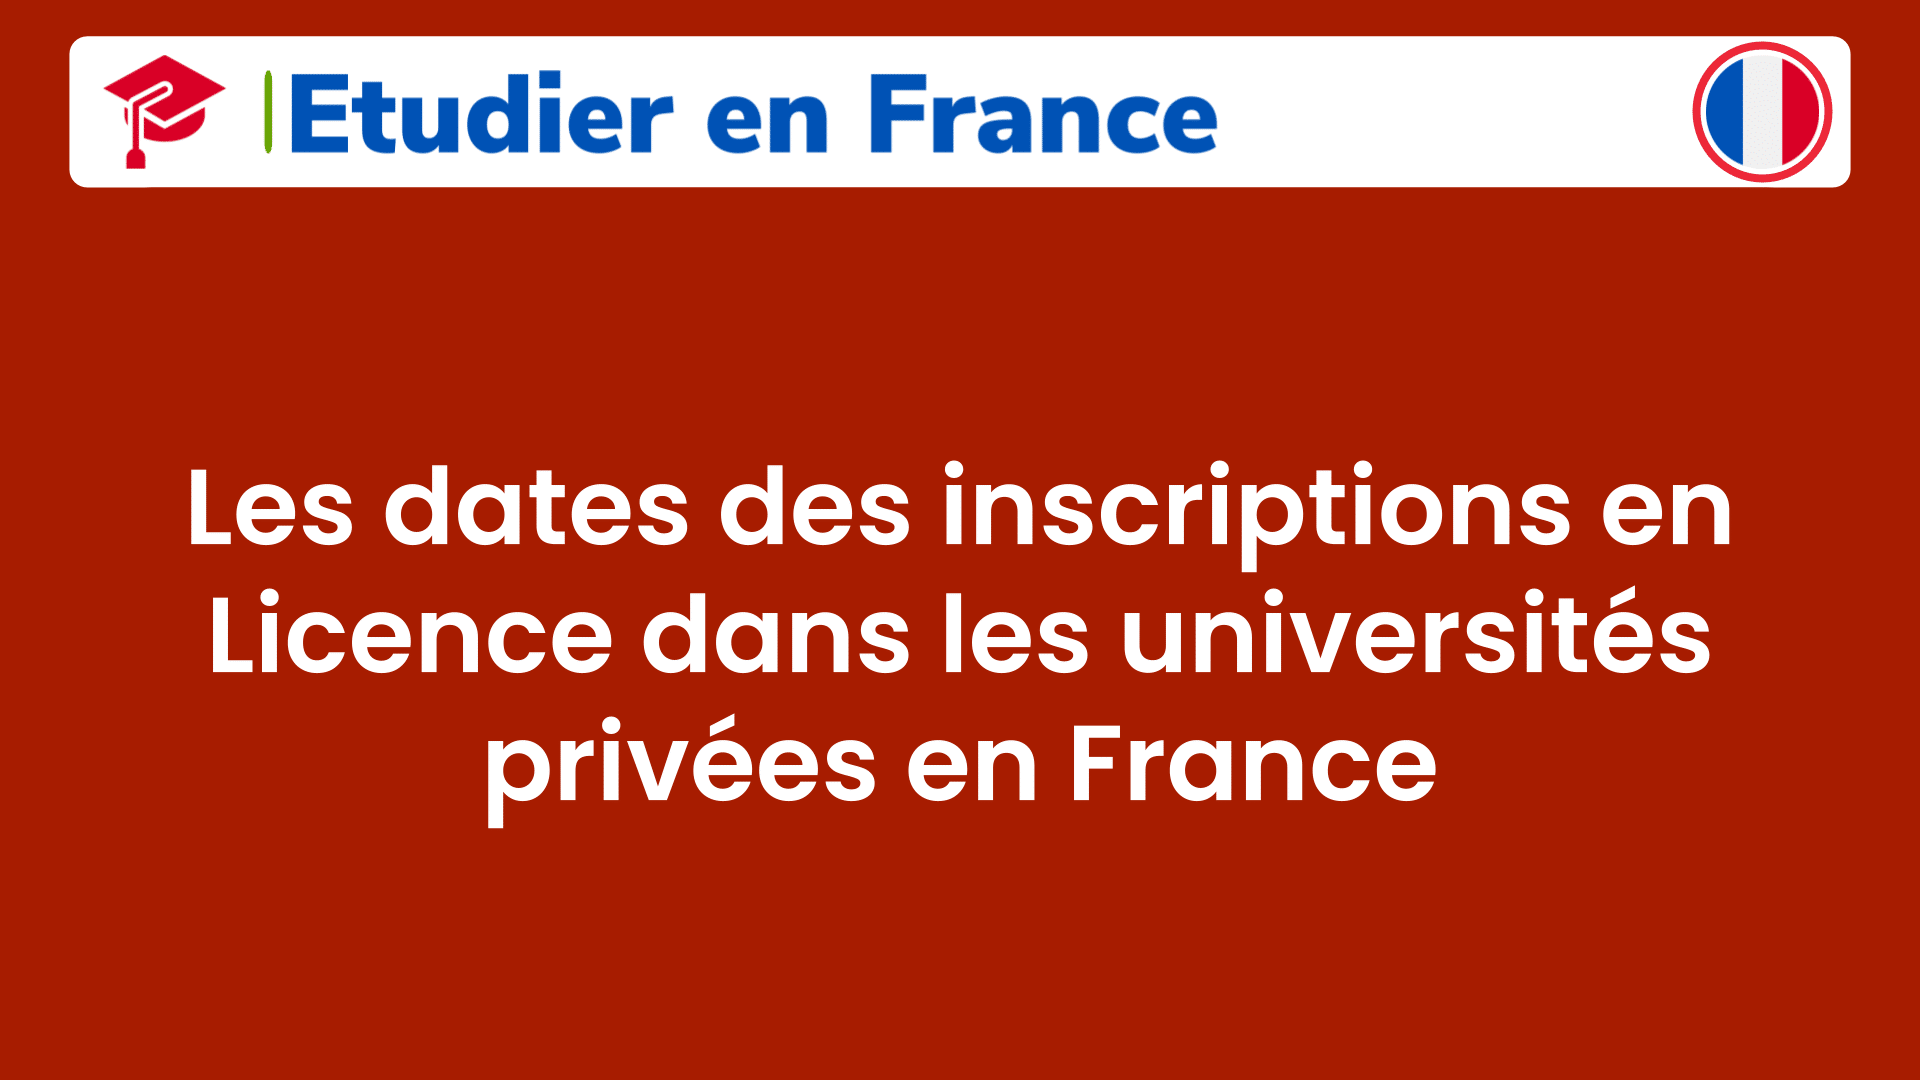 Les dates des inscriptions en Licence dans les universités privées en France